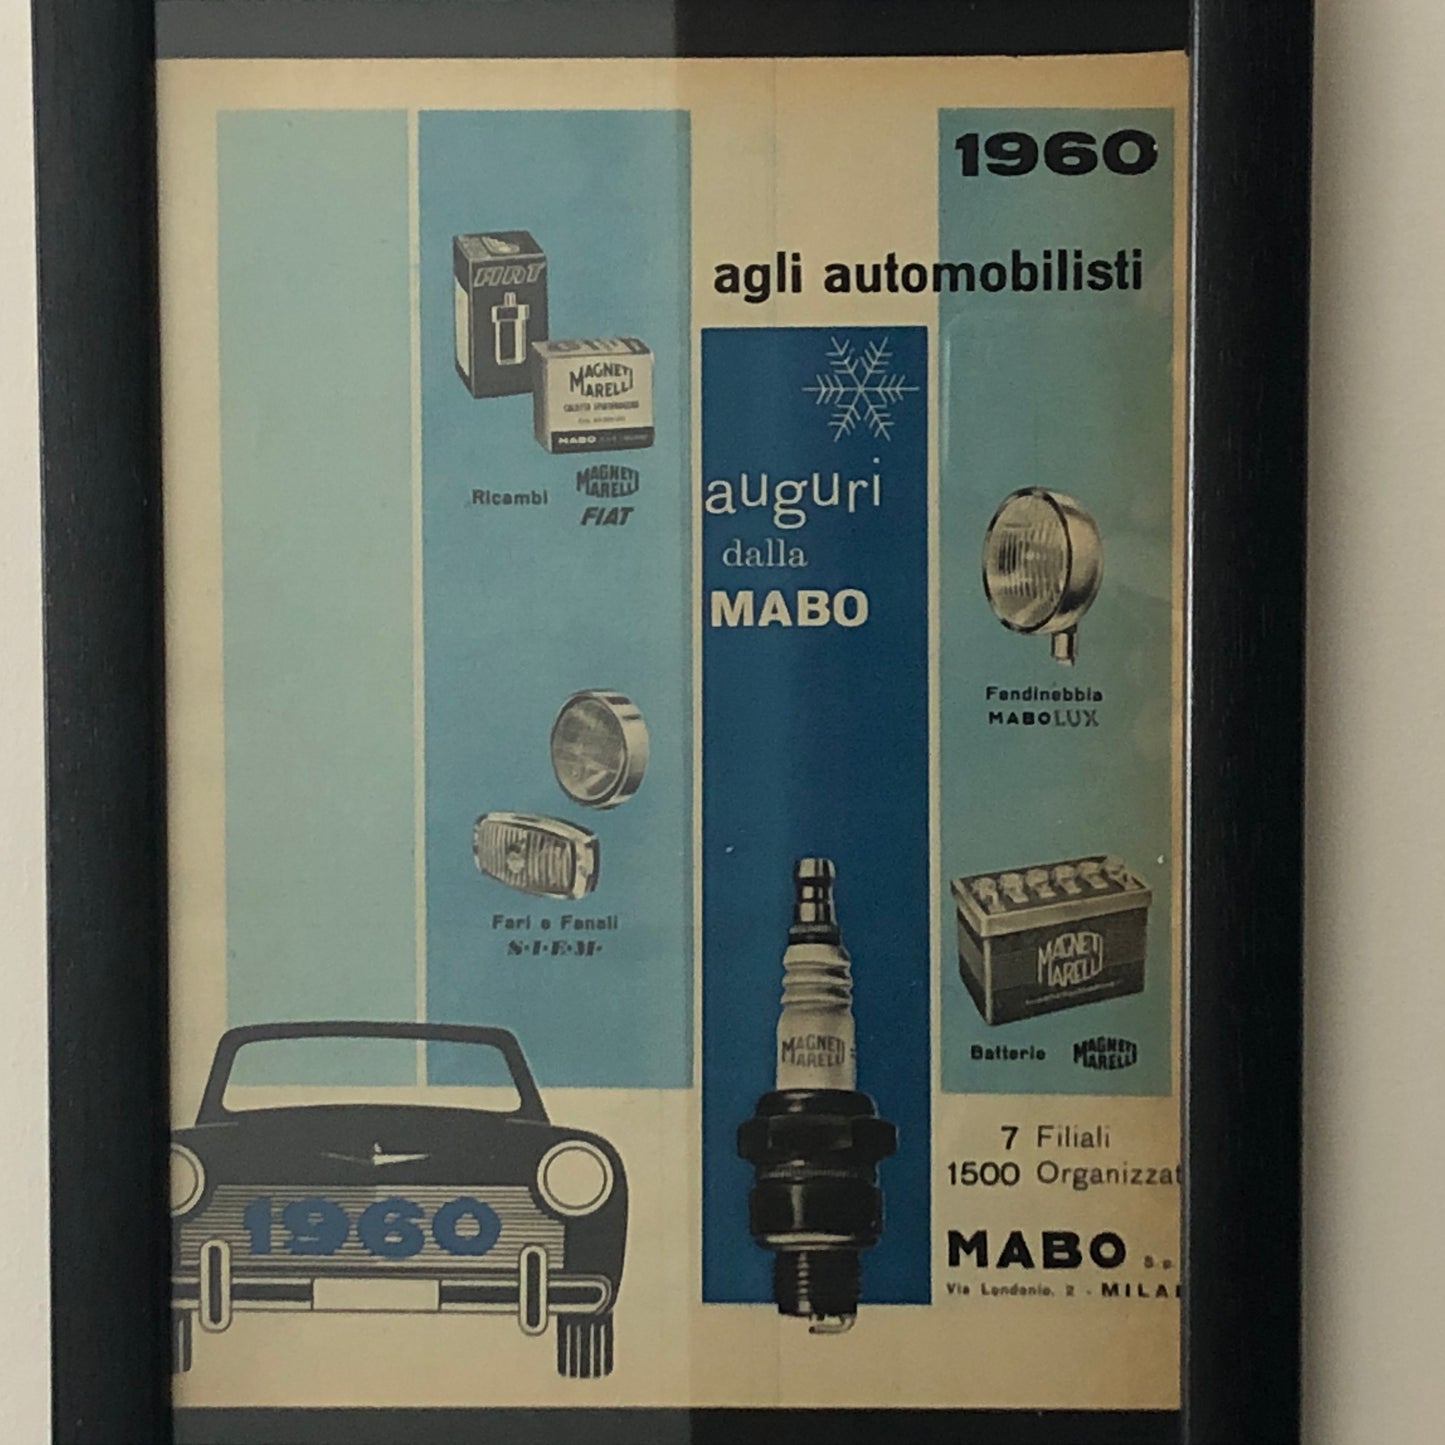 Magneti Marelli, Pubblicità Anno 1960 Auguri dalla MABO agli Automobilisti Disegnata dallo Studio Dalla Costa